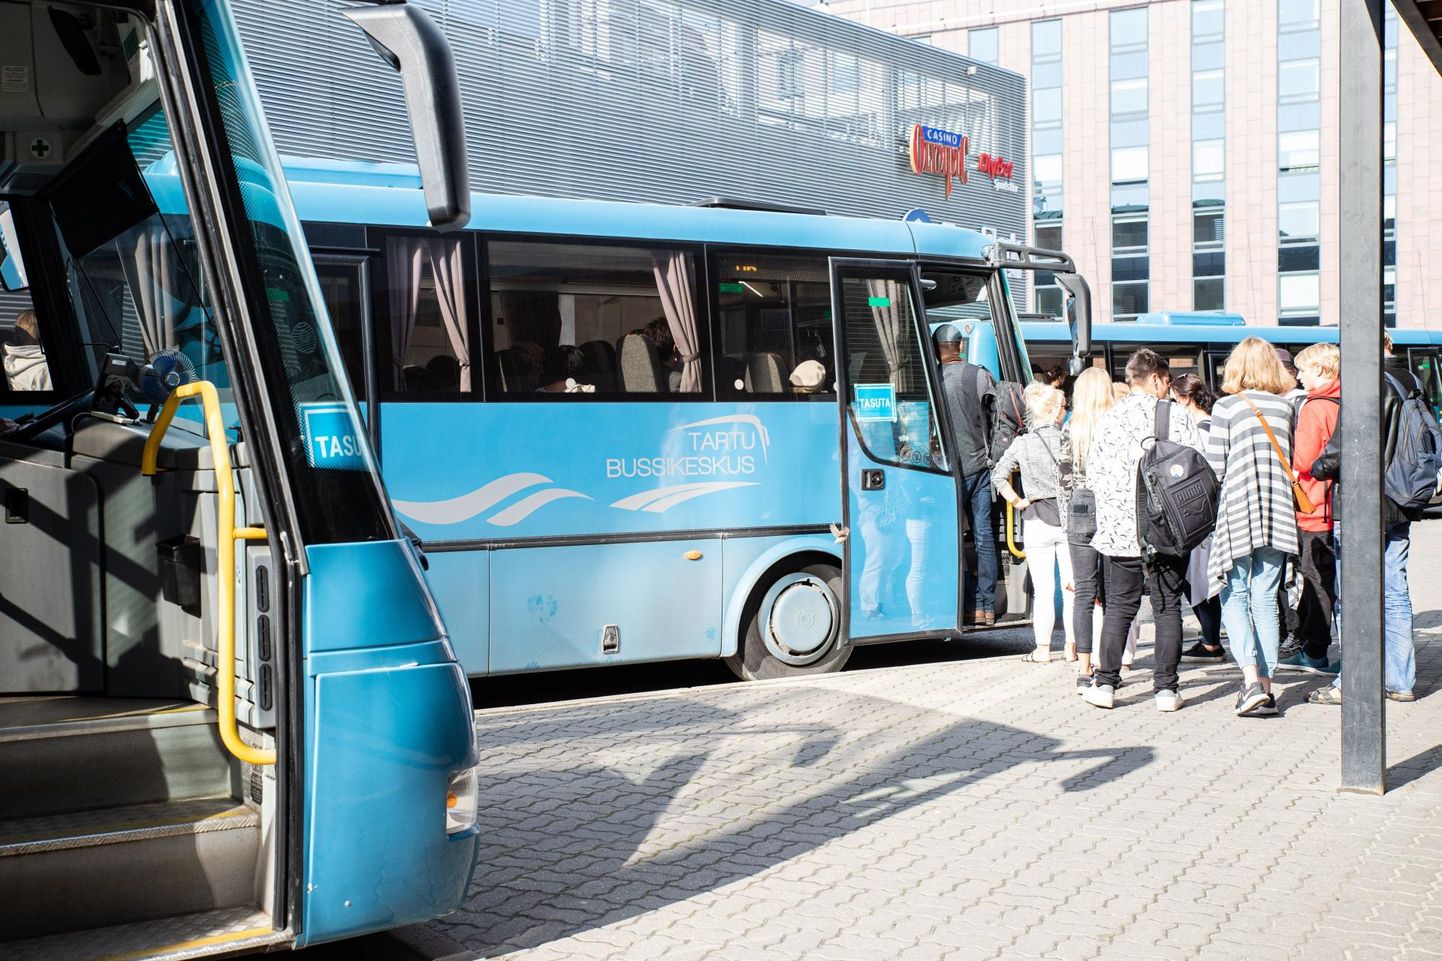 Pisut enam kui aasta tagasi hakkas suuremas osas Eestis, sealhulgas Tartumaal, kehtima maakonnaliinidel tasuta bussisõit.